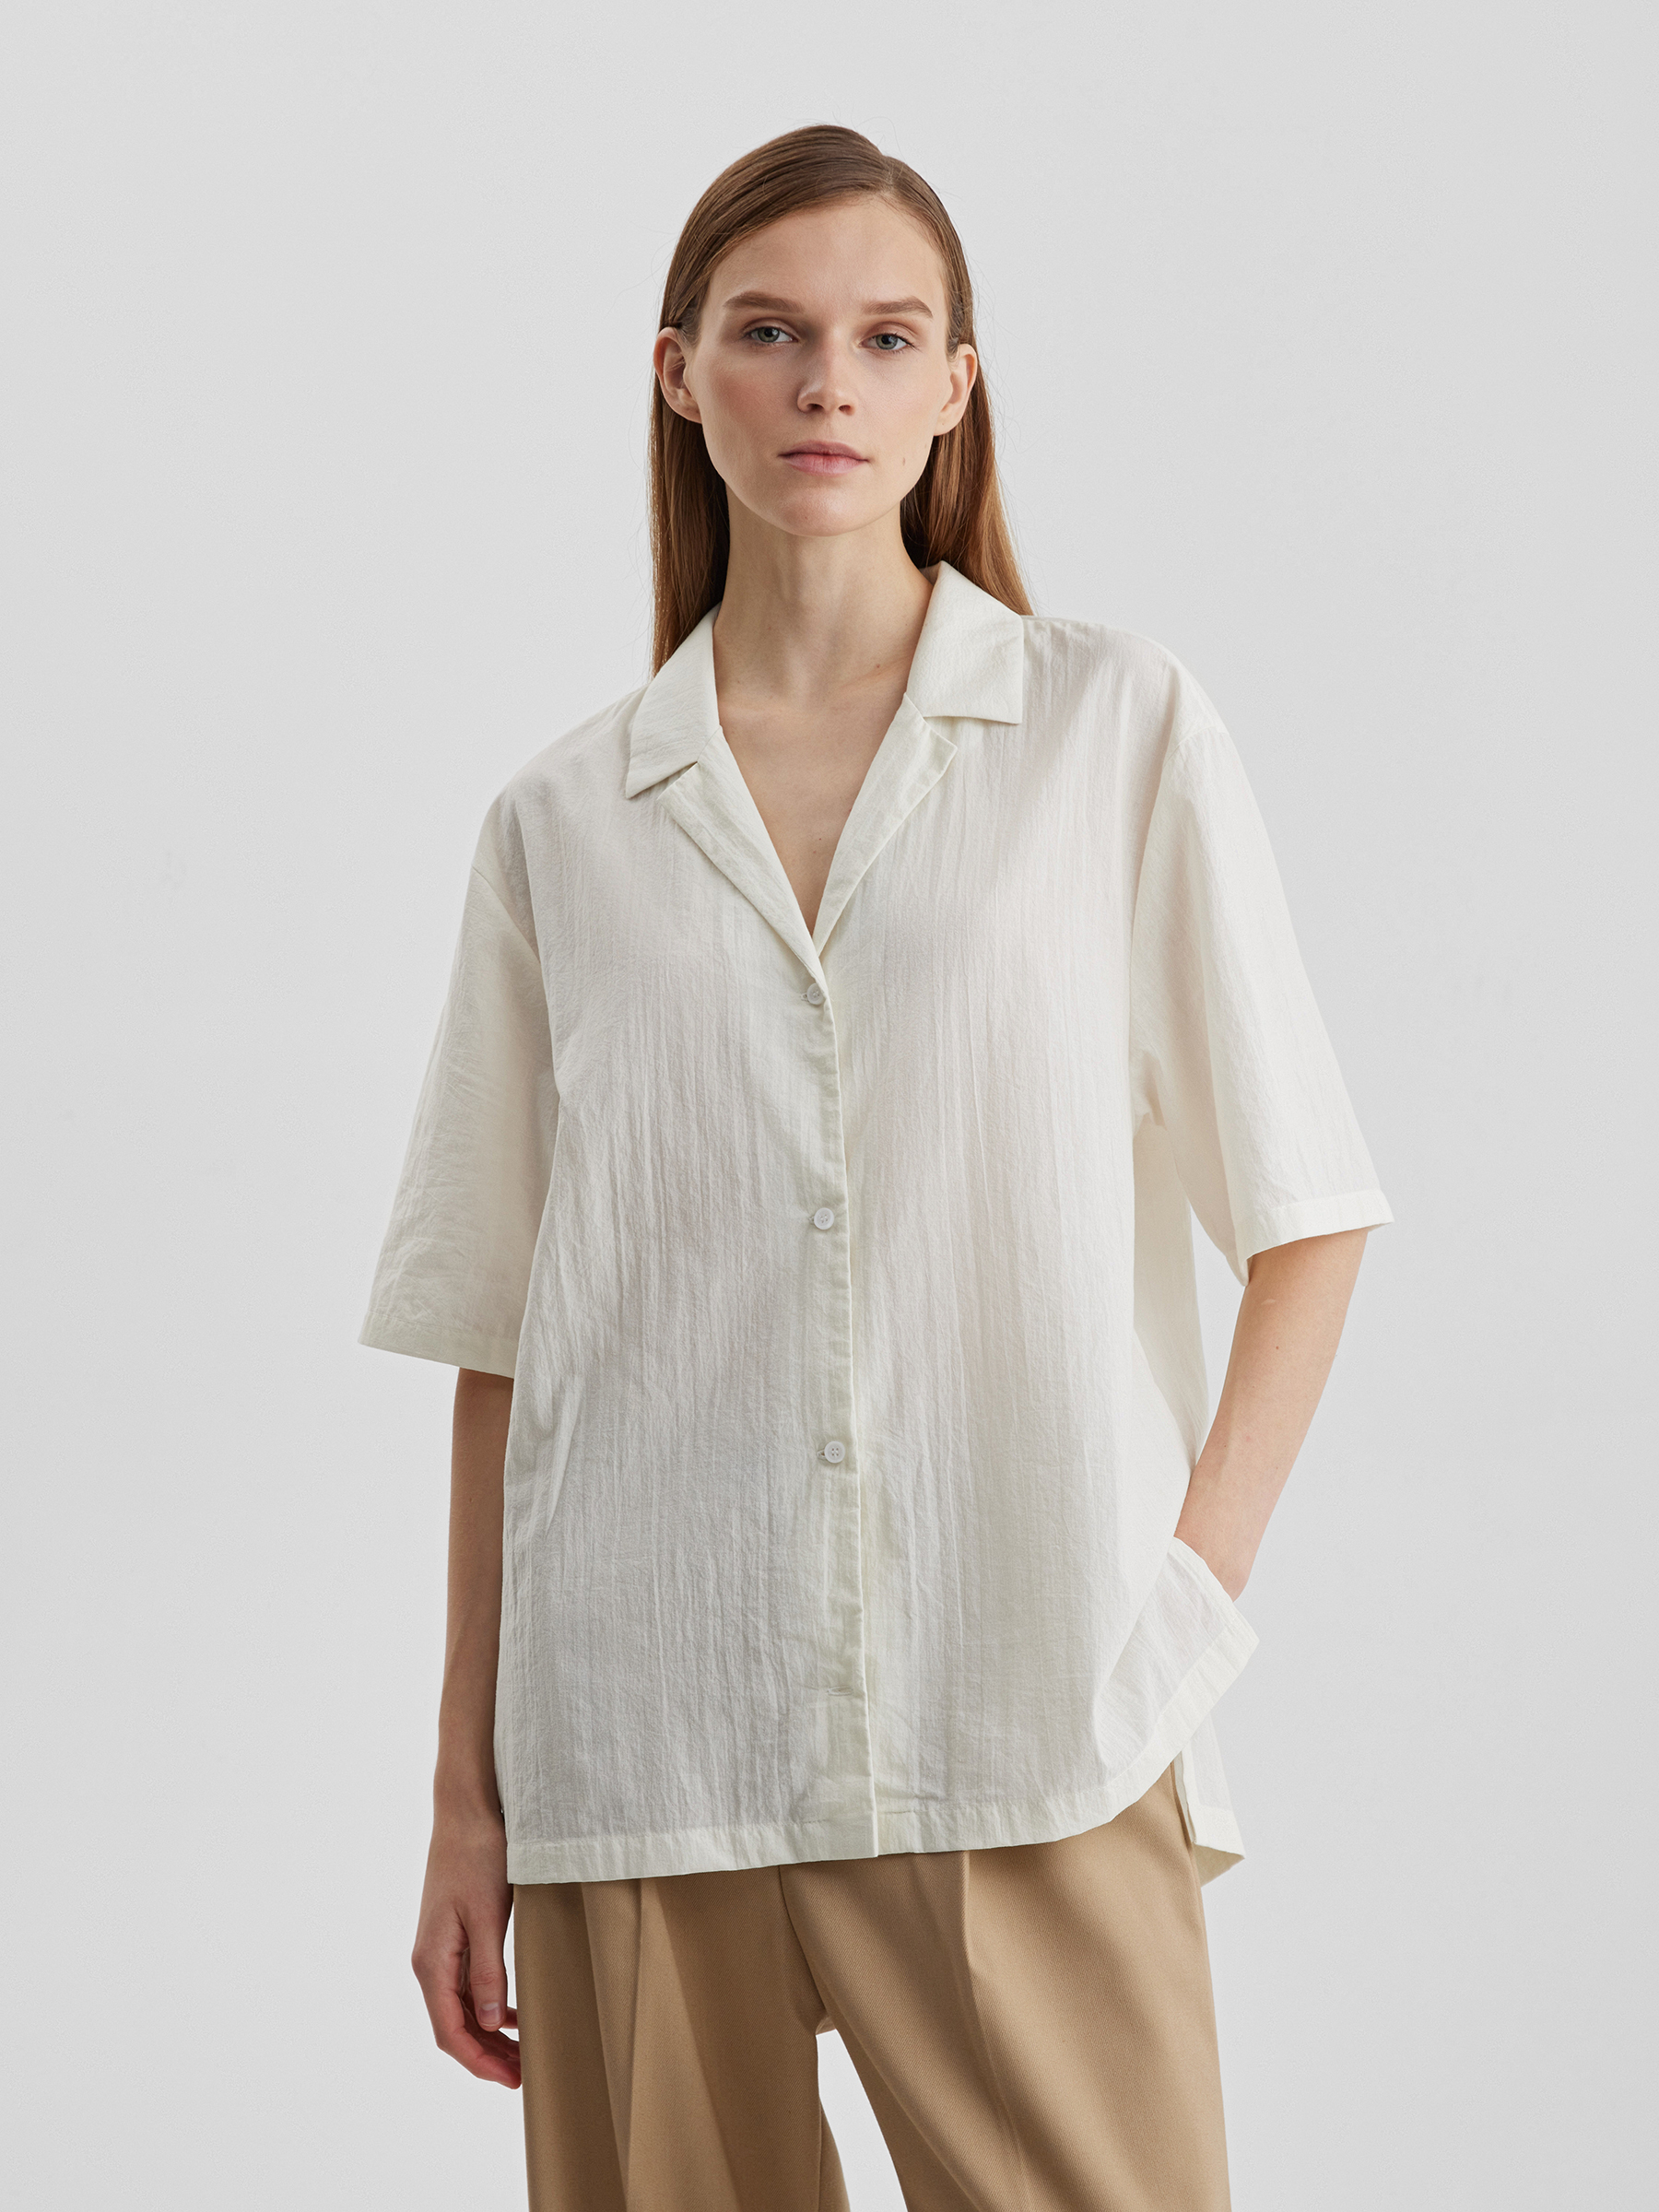 Рубашка женская с коротким рукавом из лёгкого хлопка, цвет – молочный мужская поглощающая рубашка с коротким рукавом и отложным воротником на пуговицах